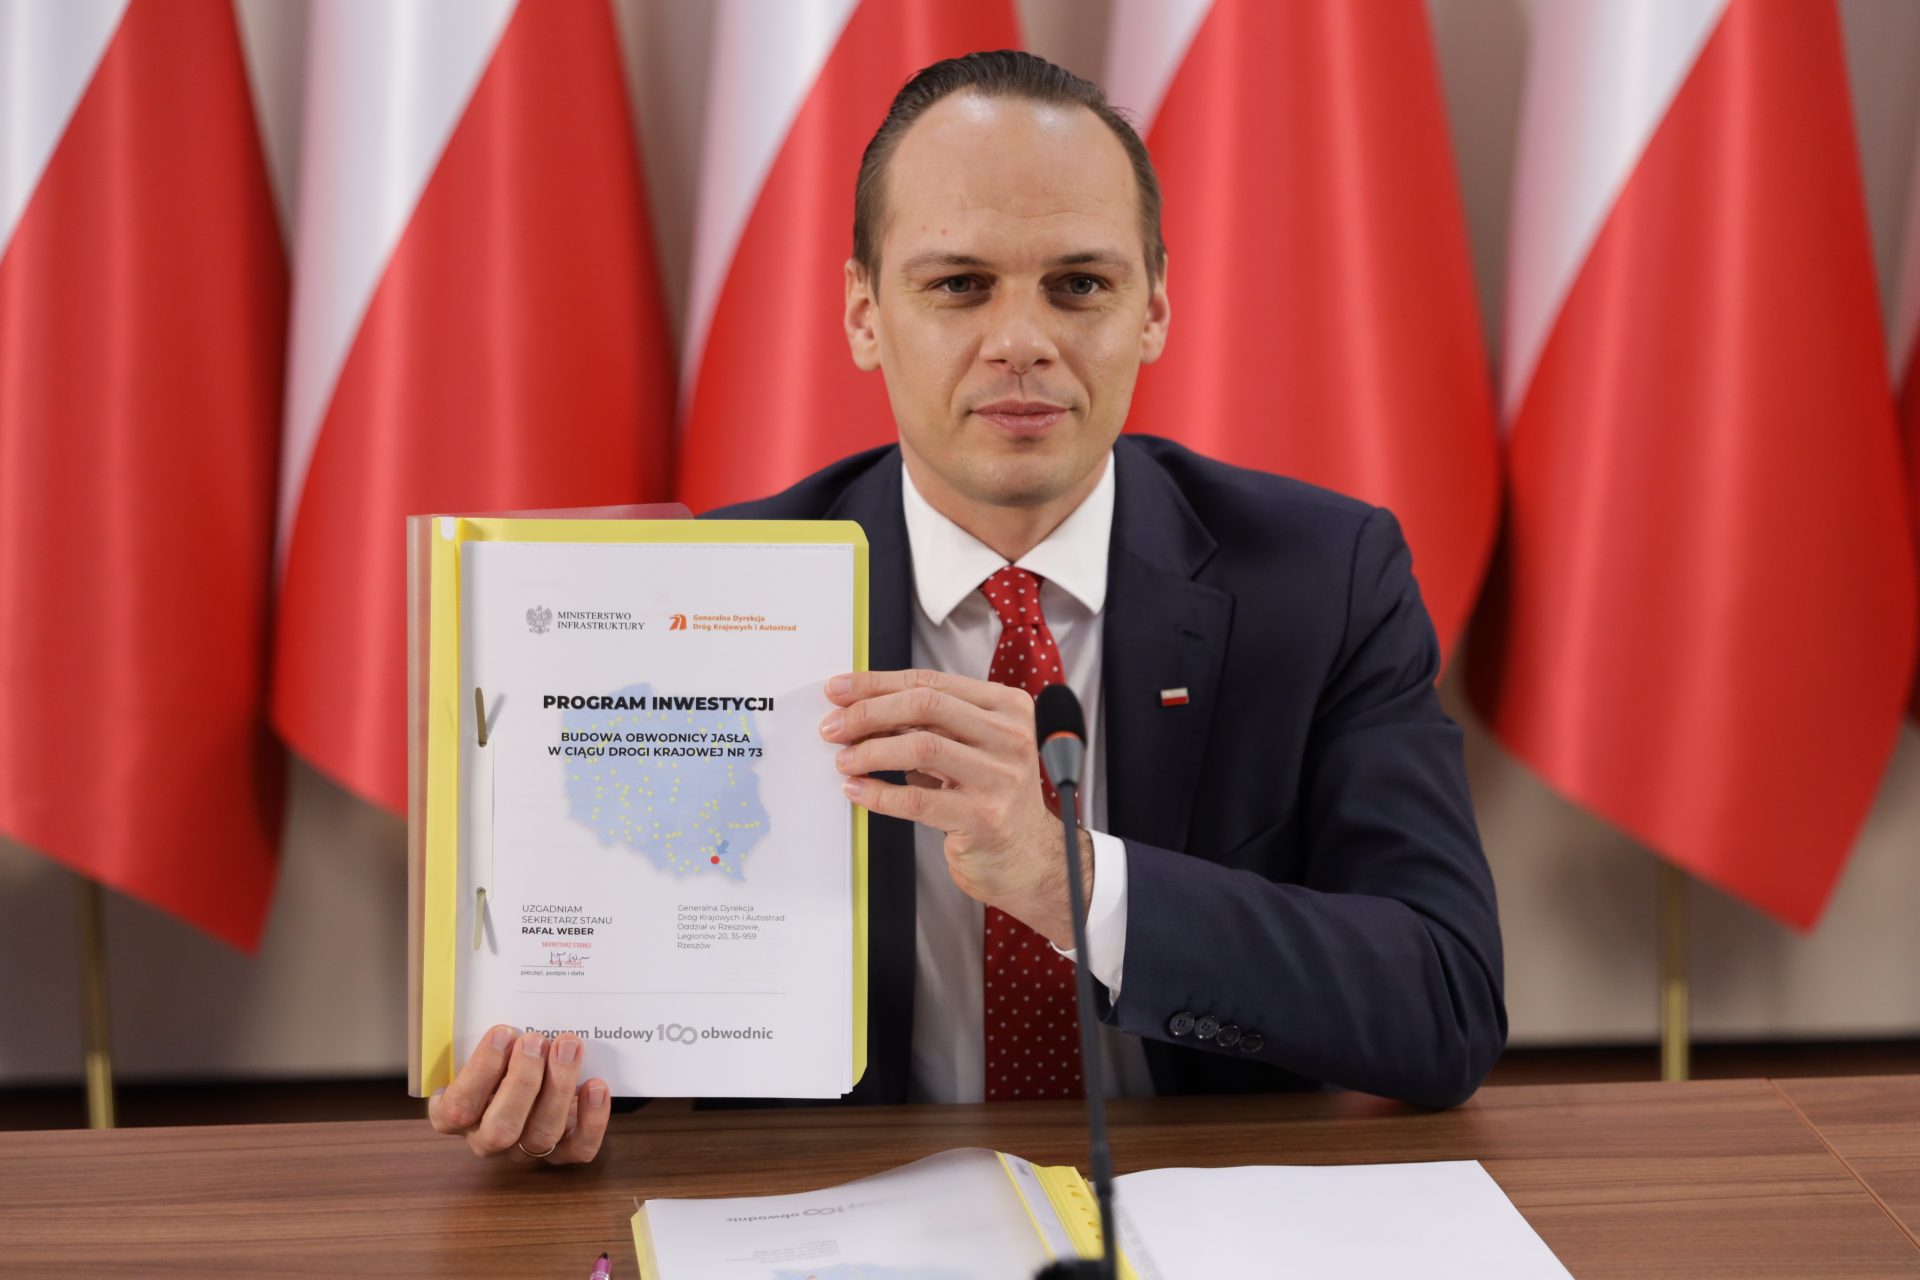 Wiceminister infrastruktury Rafał Weber zatwierdził Program inwestycji dla obwodnicy Jasła